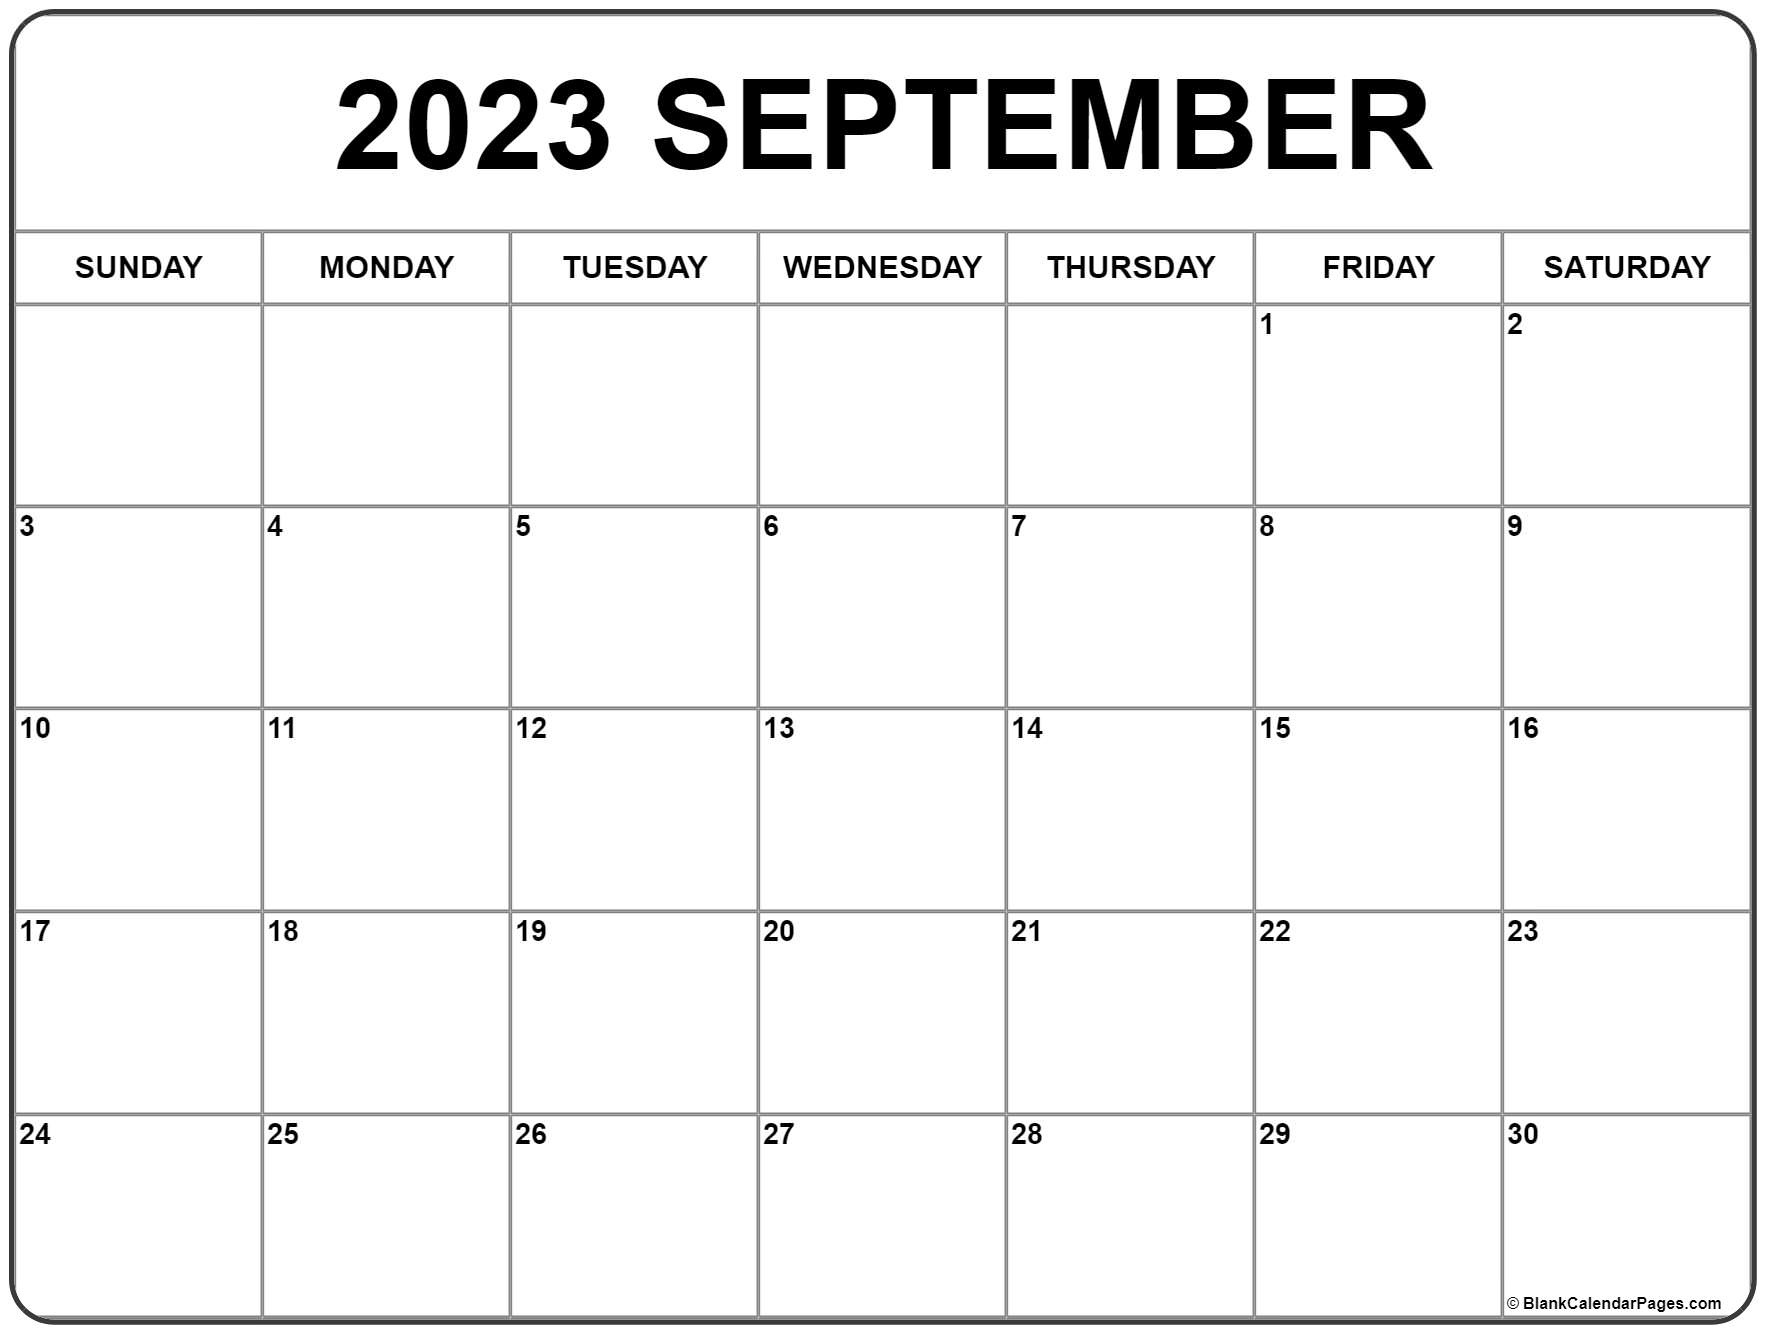 Calendar For September 2023 Get Calendar 2023 Update